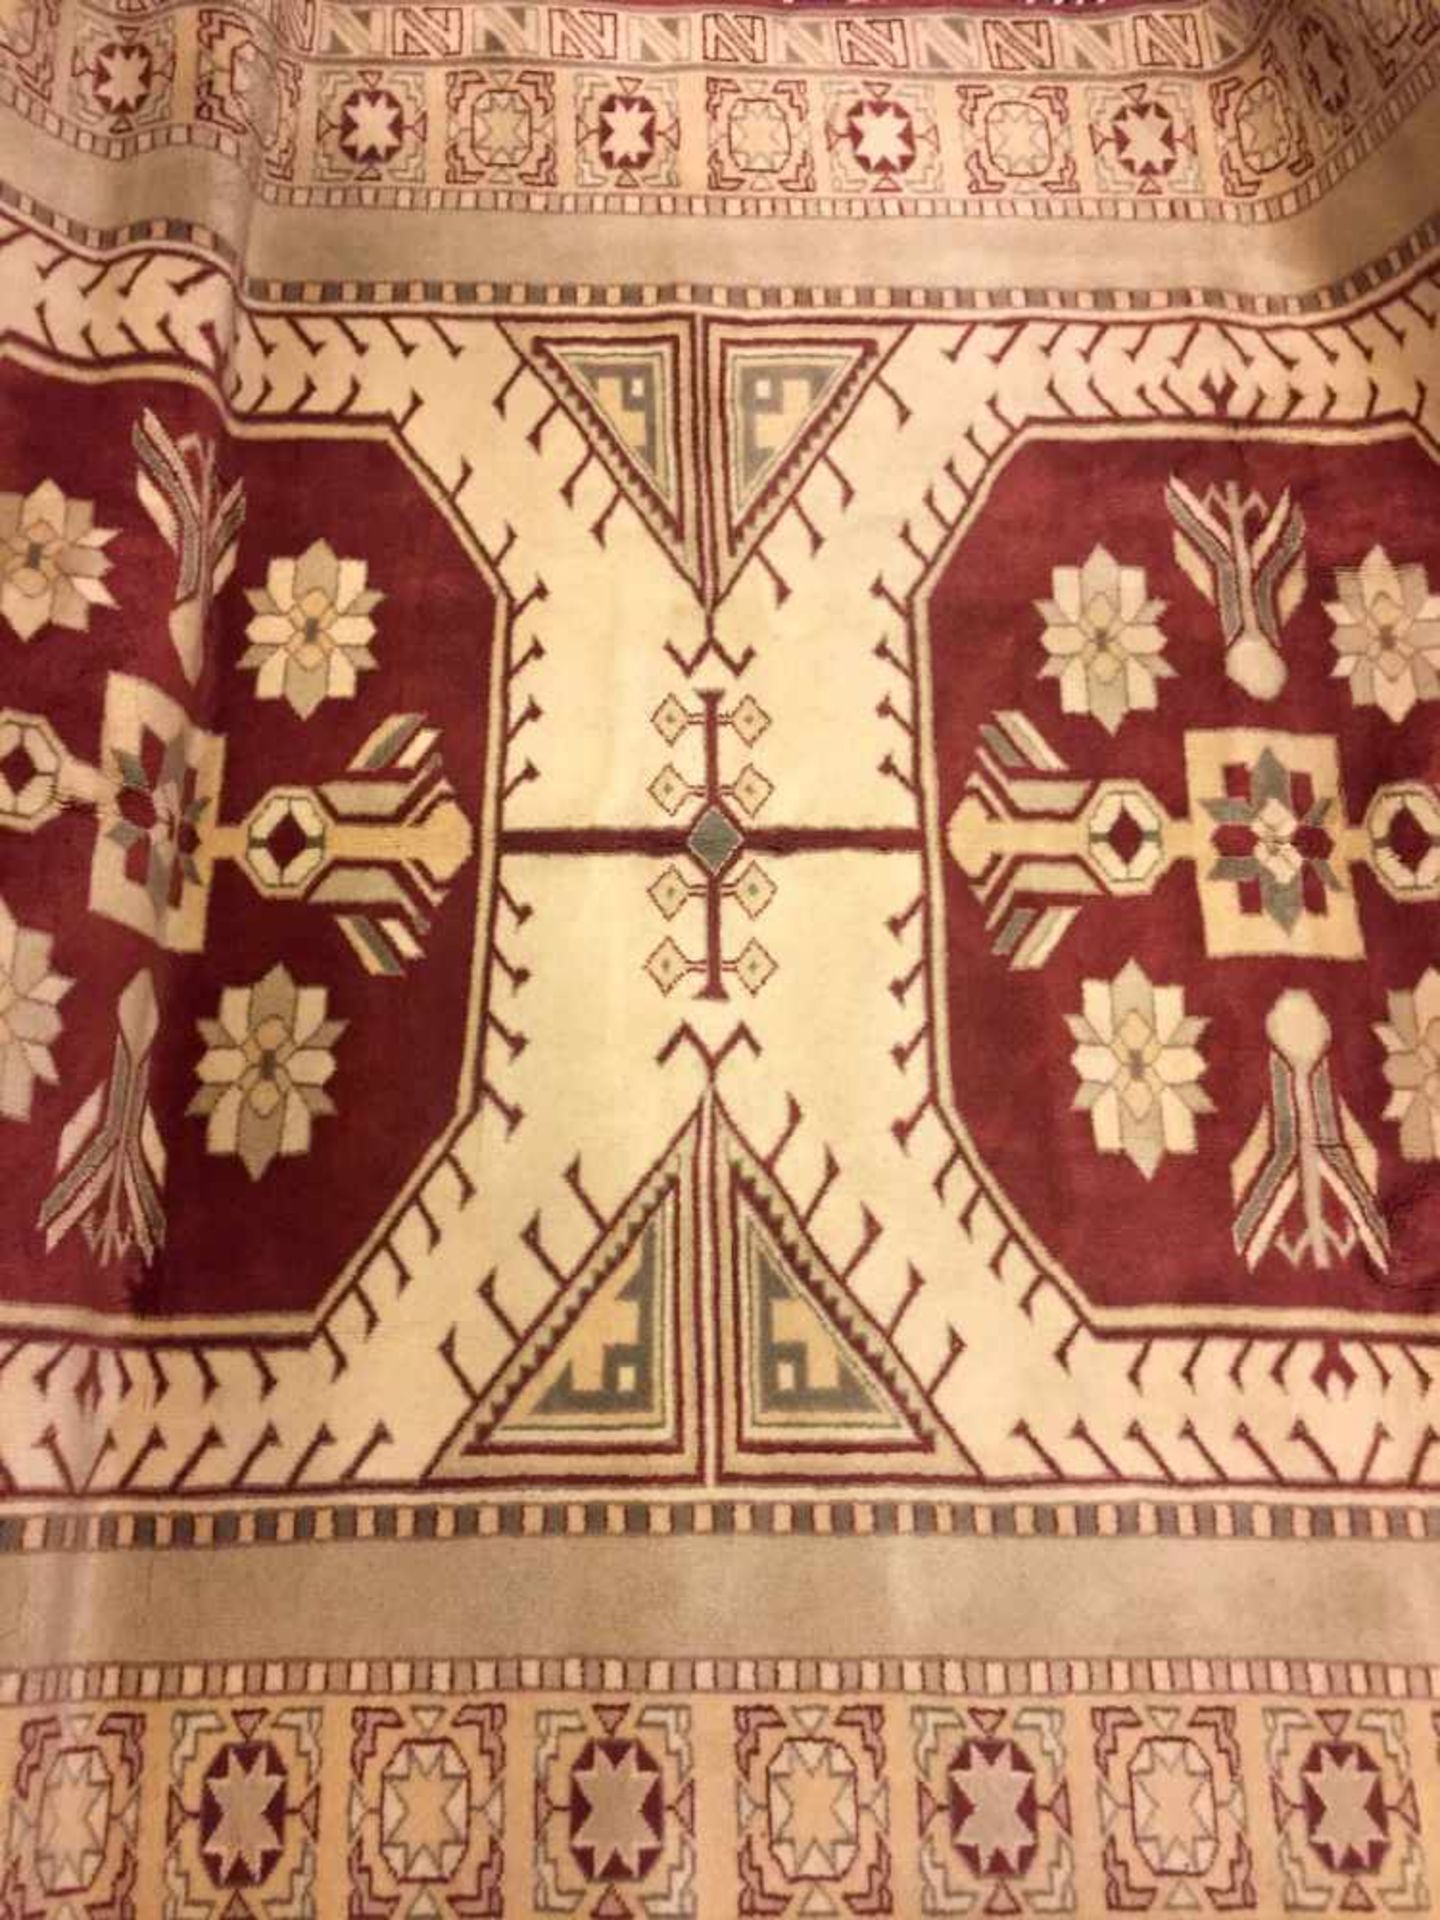 Großer eleganter Teppich: Handgeknüpft, 1,95 x 2,95 m.Wolle auf Wolle, Fransenkanten, creme-farbener - Bild 3 aus 4